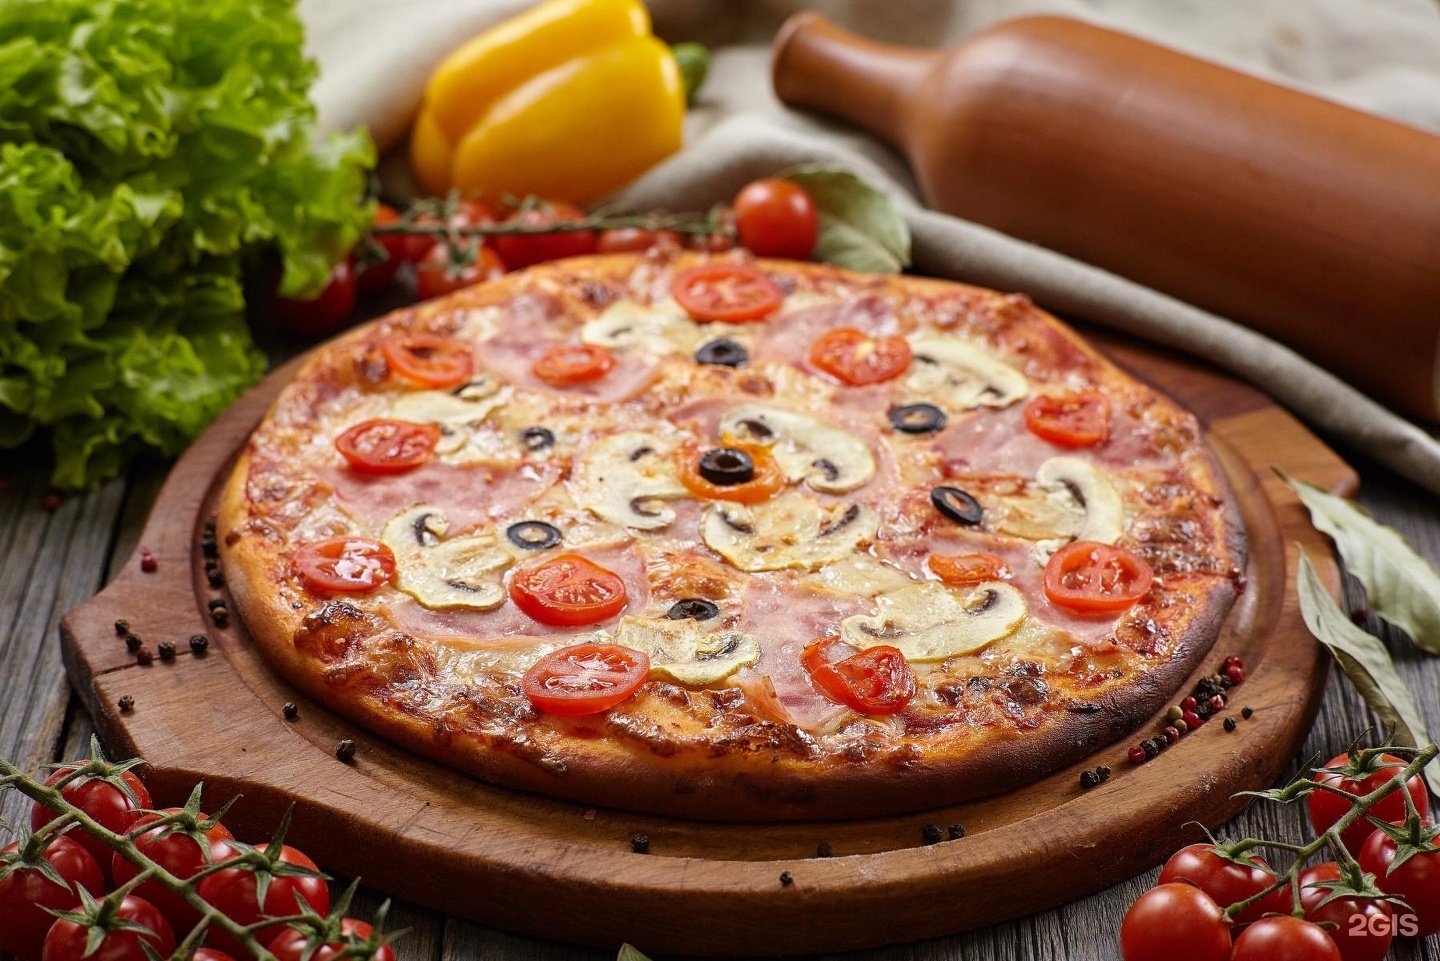 Така пицца. Пицца Капричоза. Каприччиозо пицца. Пицца Капричоза в Италии. Капричеза пицца состав.